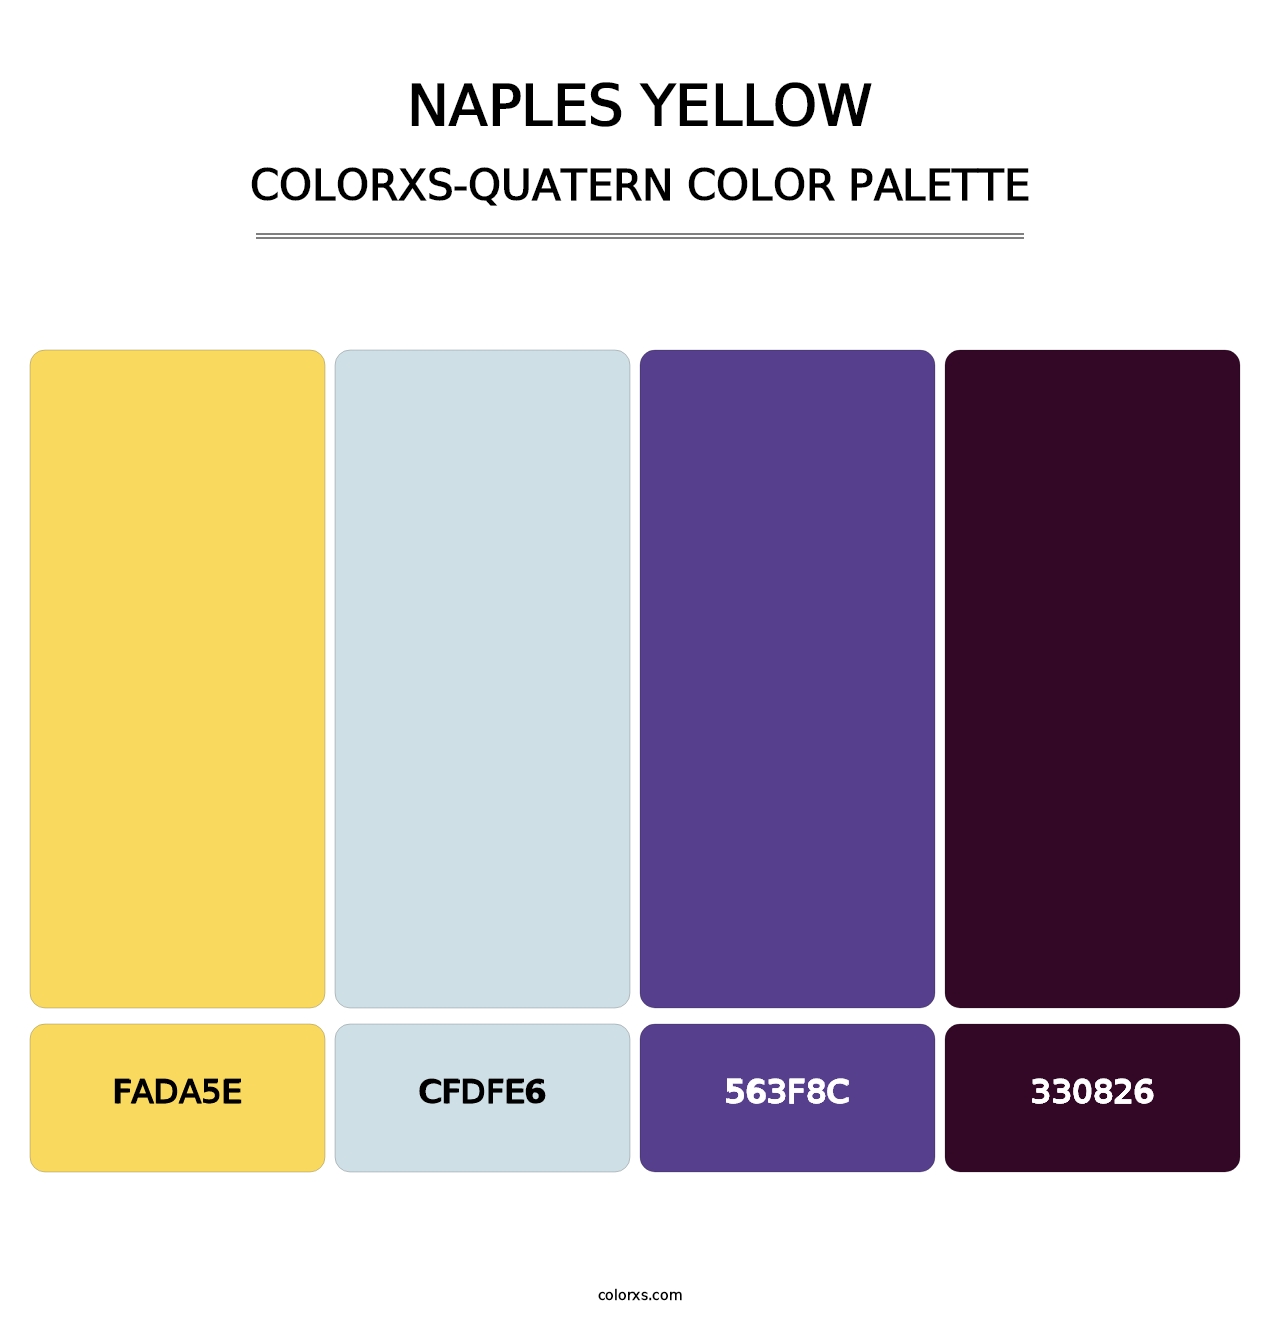 Naples Yellow - Colorxs Quatern Palette